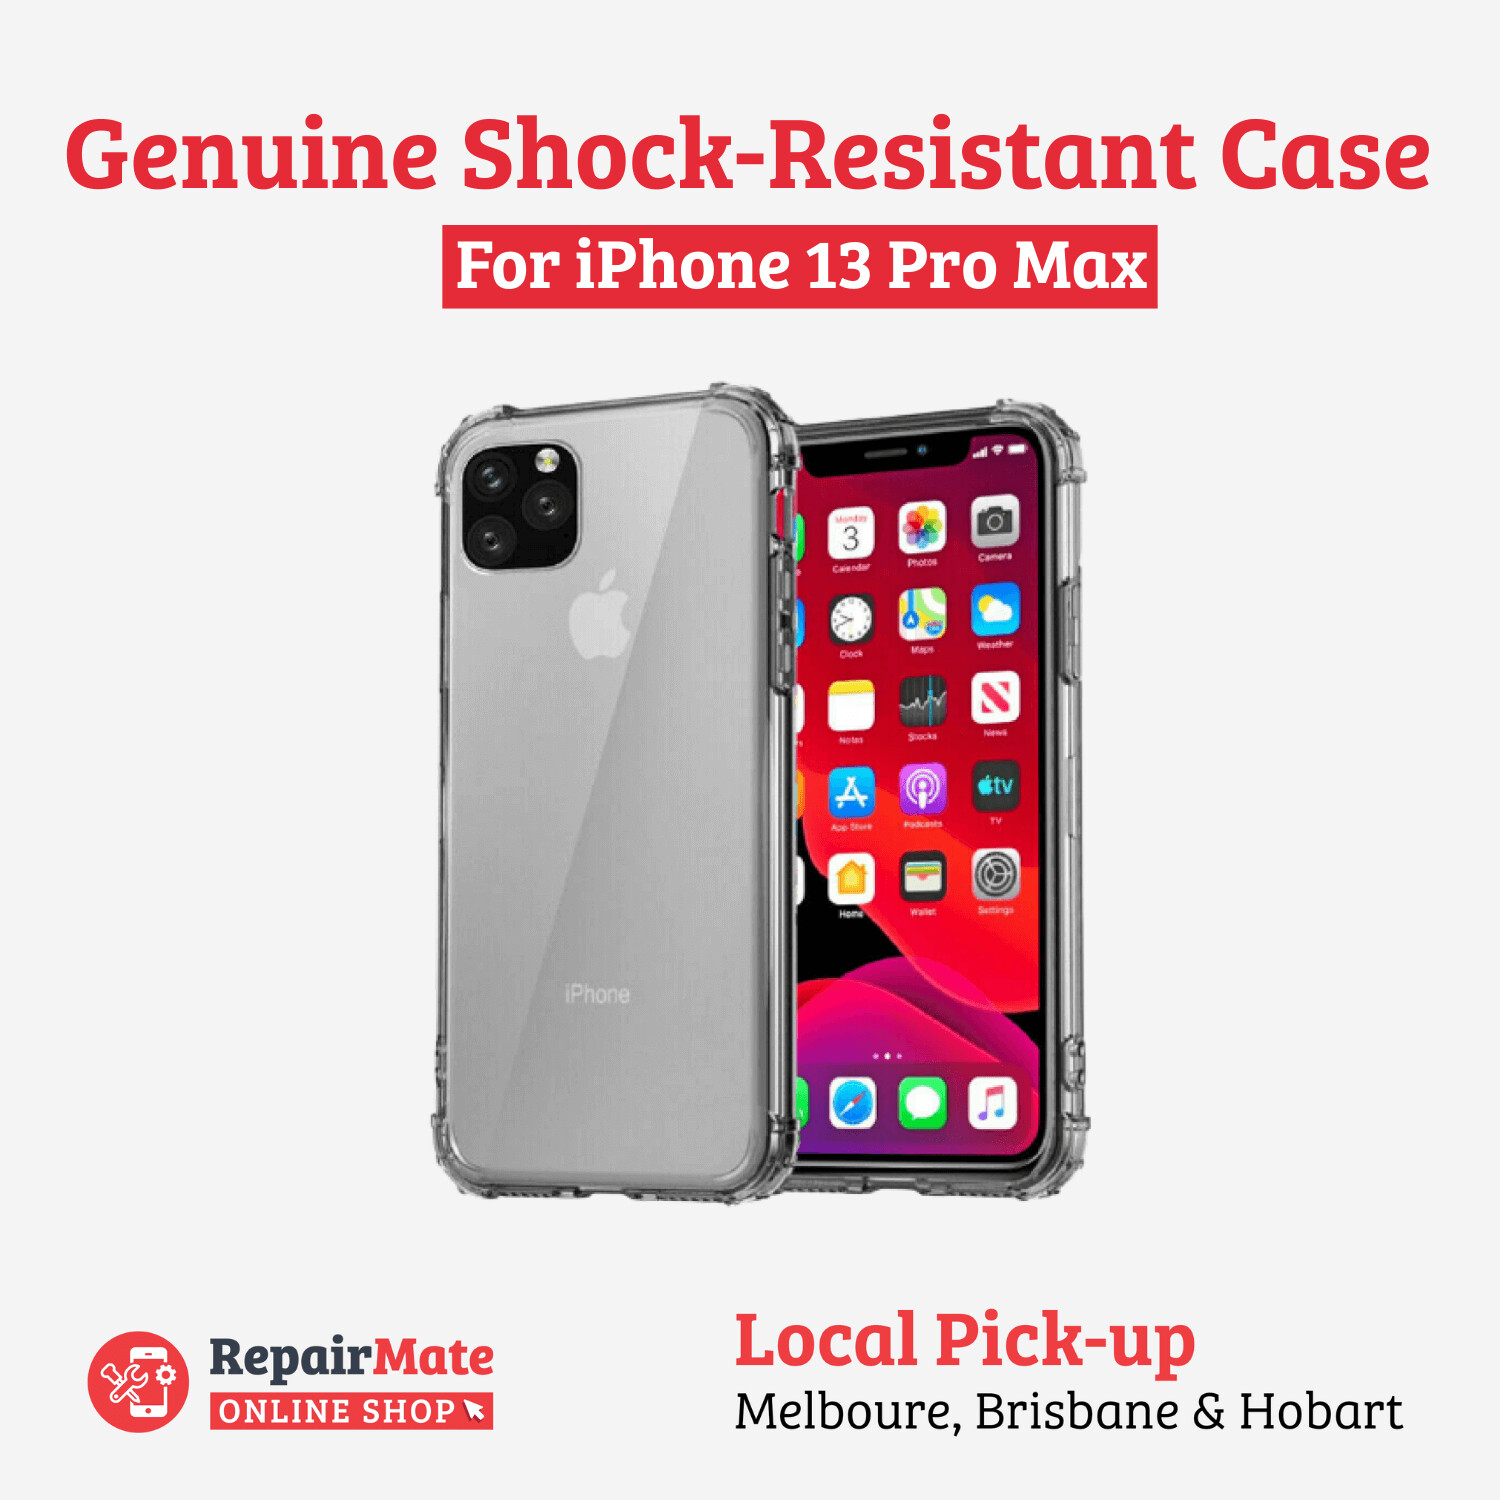 iPhone 13 Pro Max Genuine Shock-Resistant Case